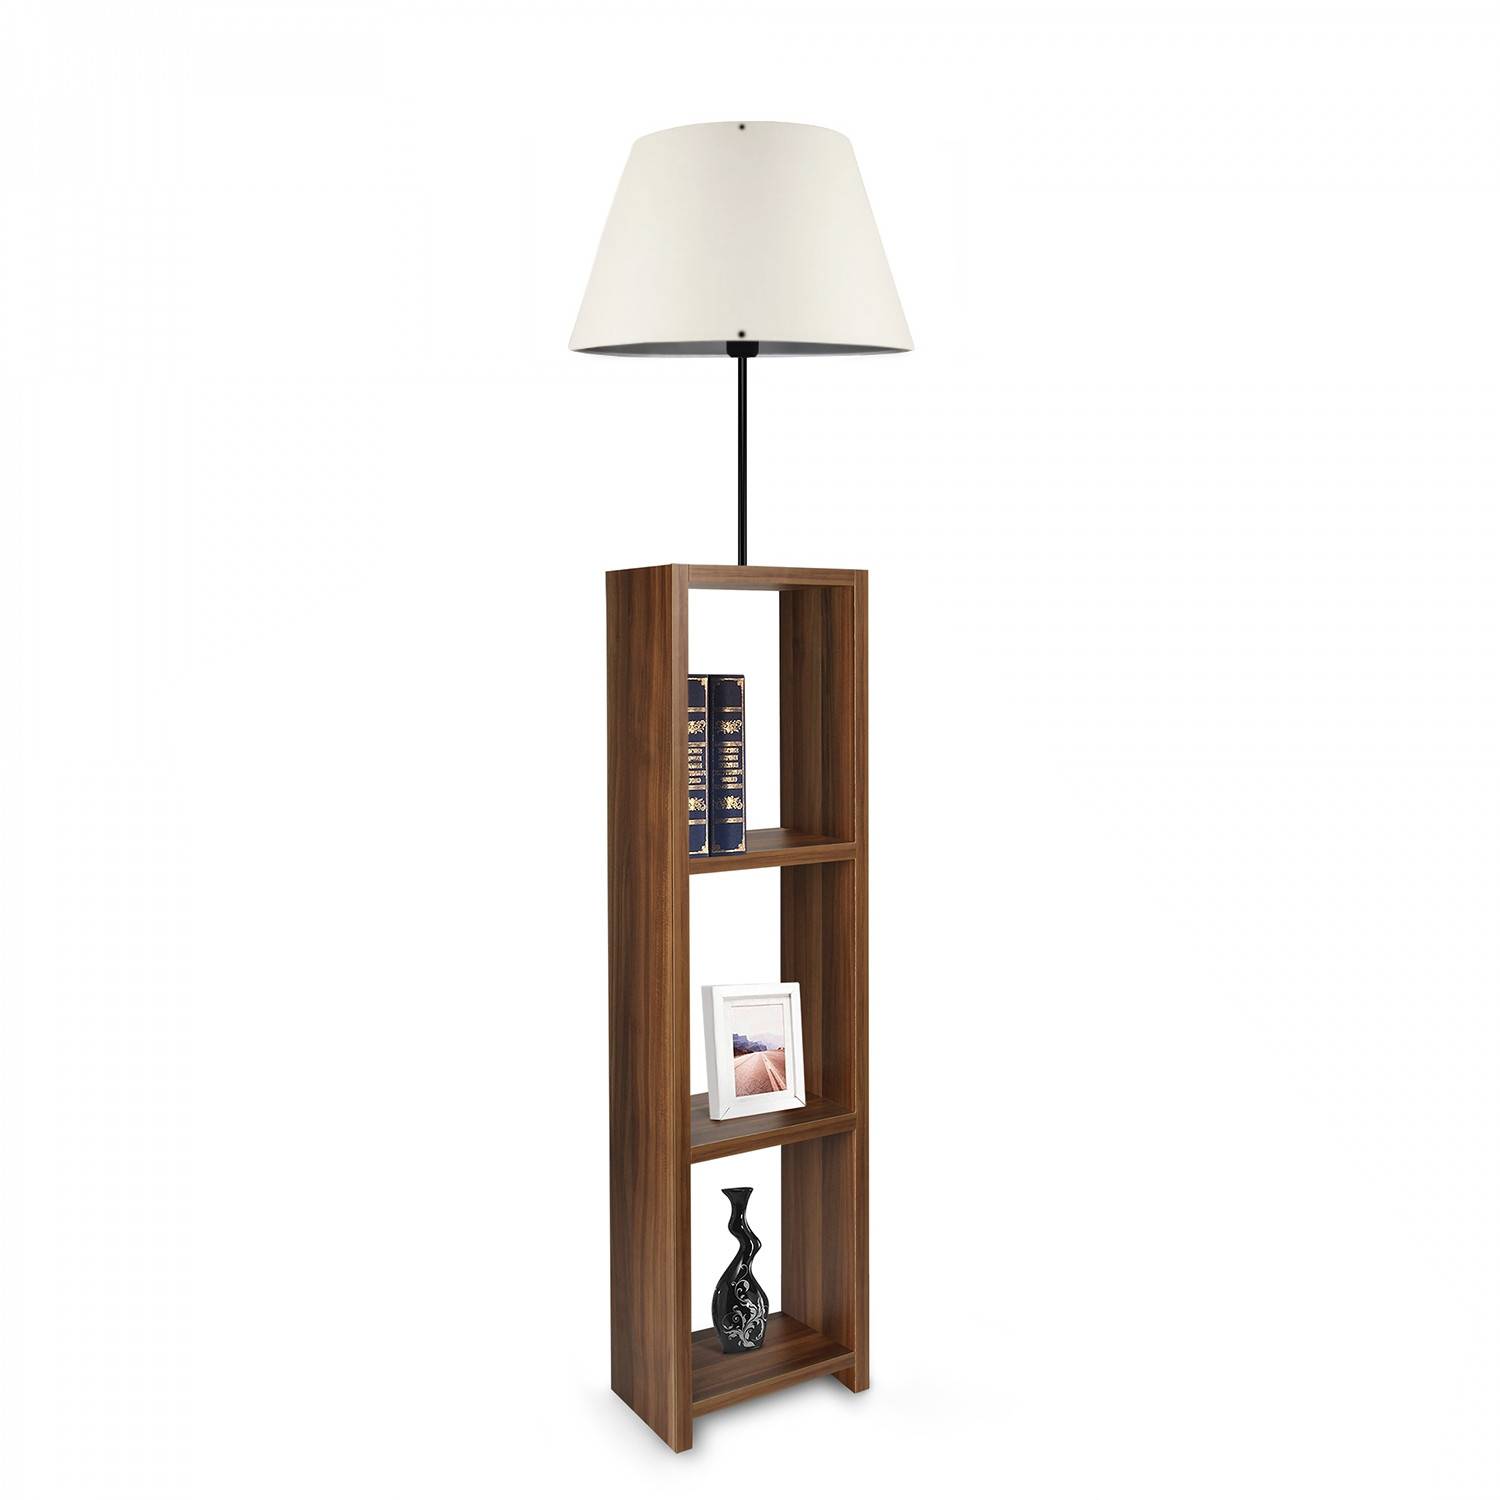 Accensola 3-shelf combinazione lampada da terra Crema tessuto bianco e legno marrone